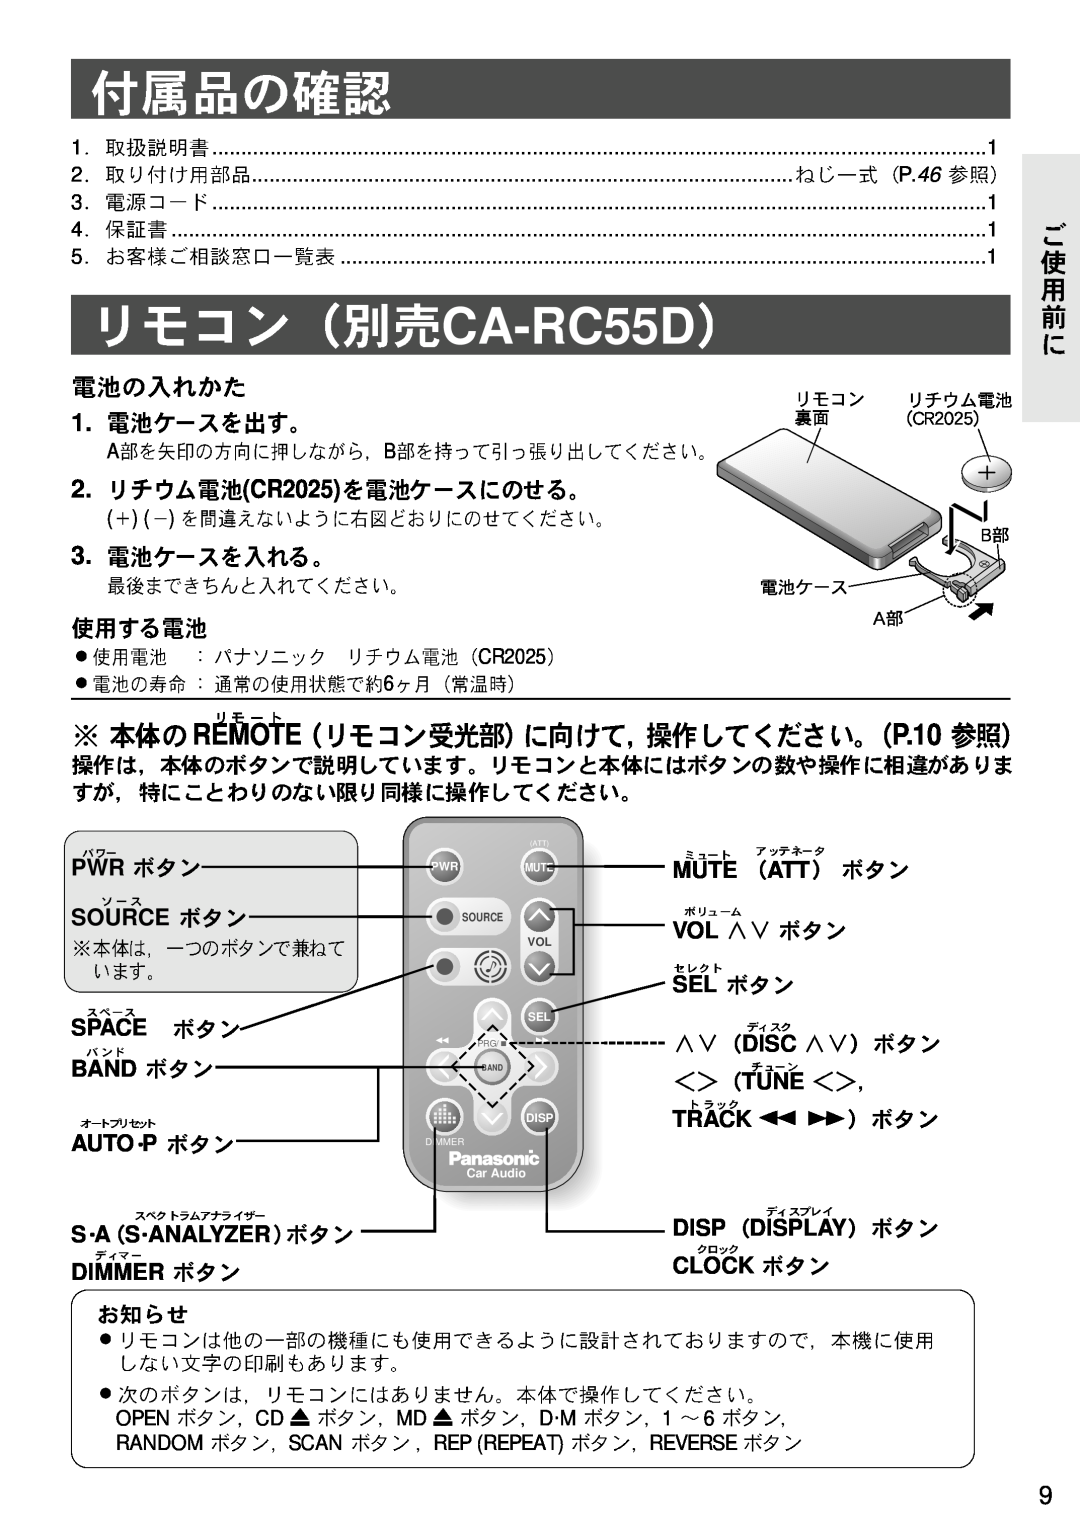 Panasonic CQ-VX3300D manual CA-RC55D, REMOTE P.10, CR2025 